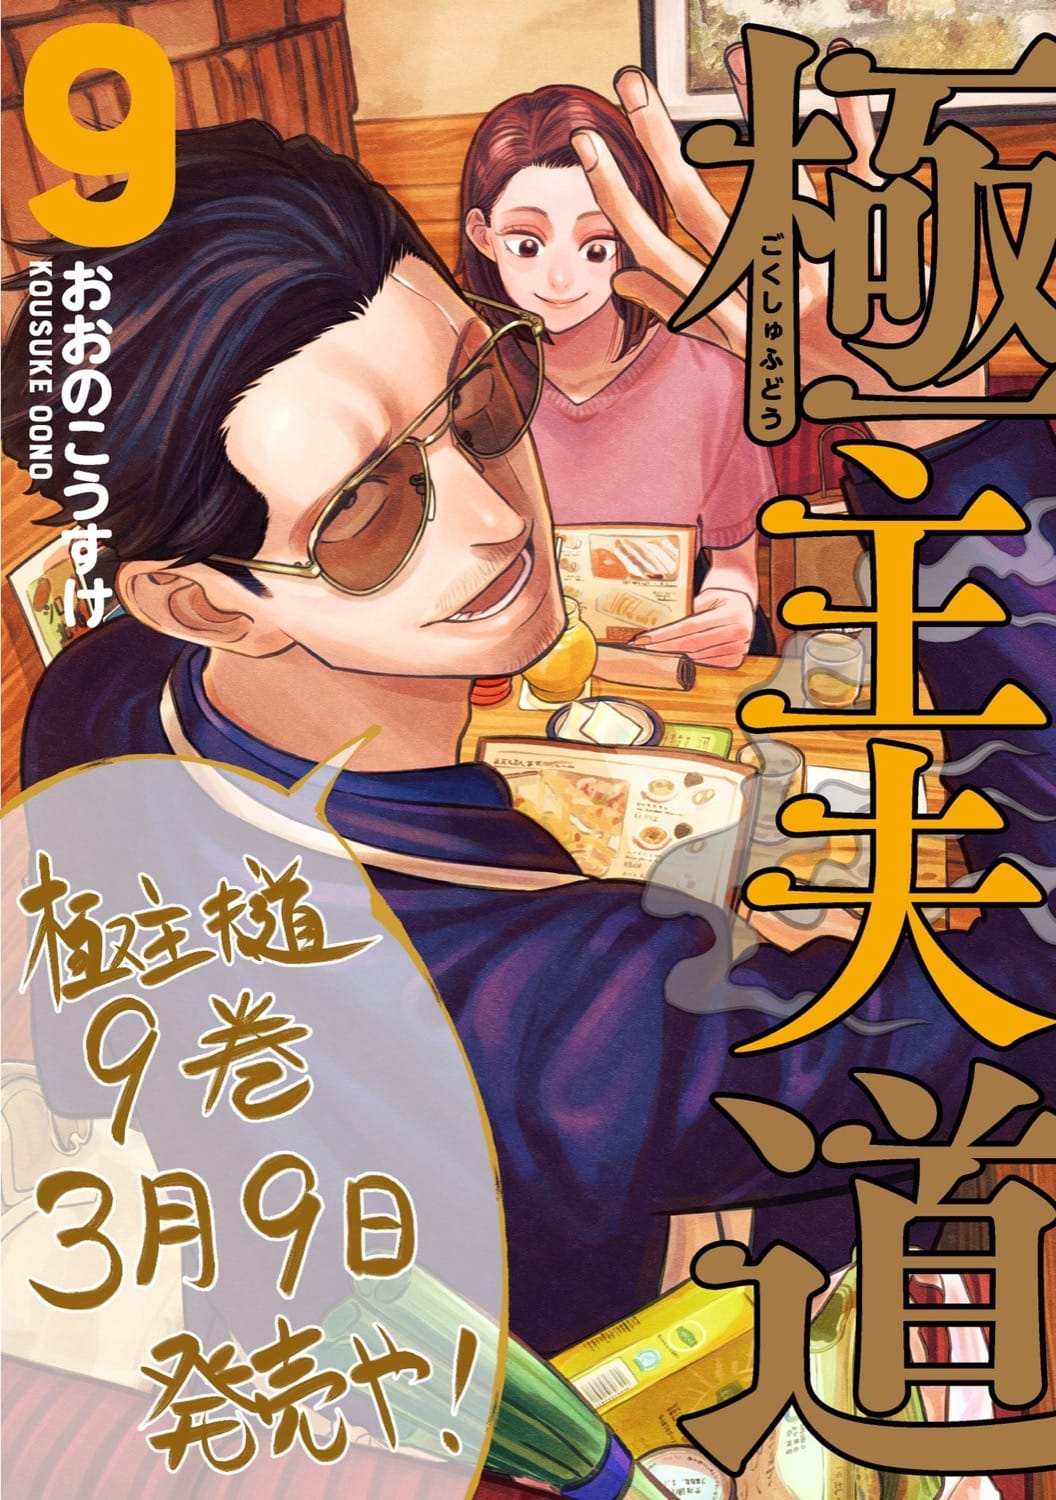 おおのこうすけ「極主夫道」最新刊 第9巻 3月9日発売!